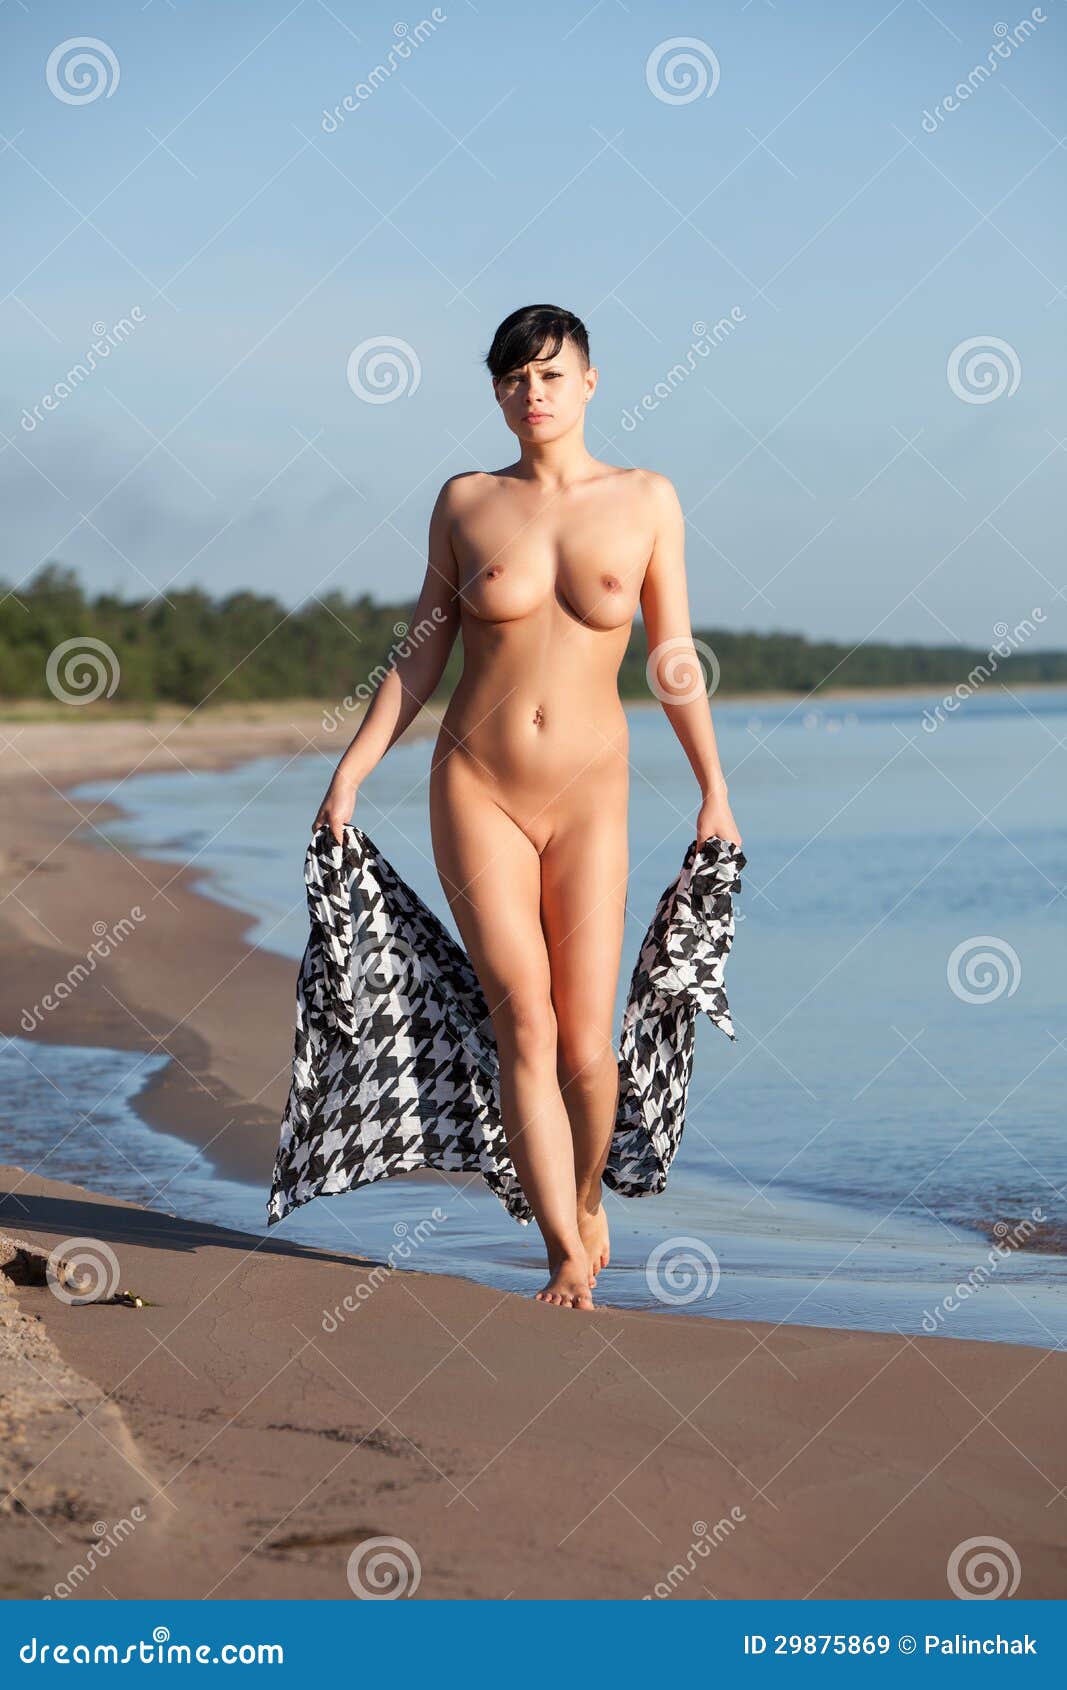 Nude women in beach